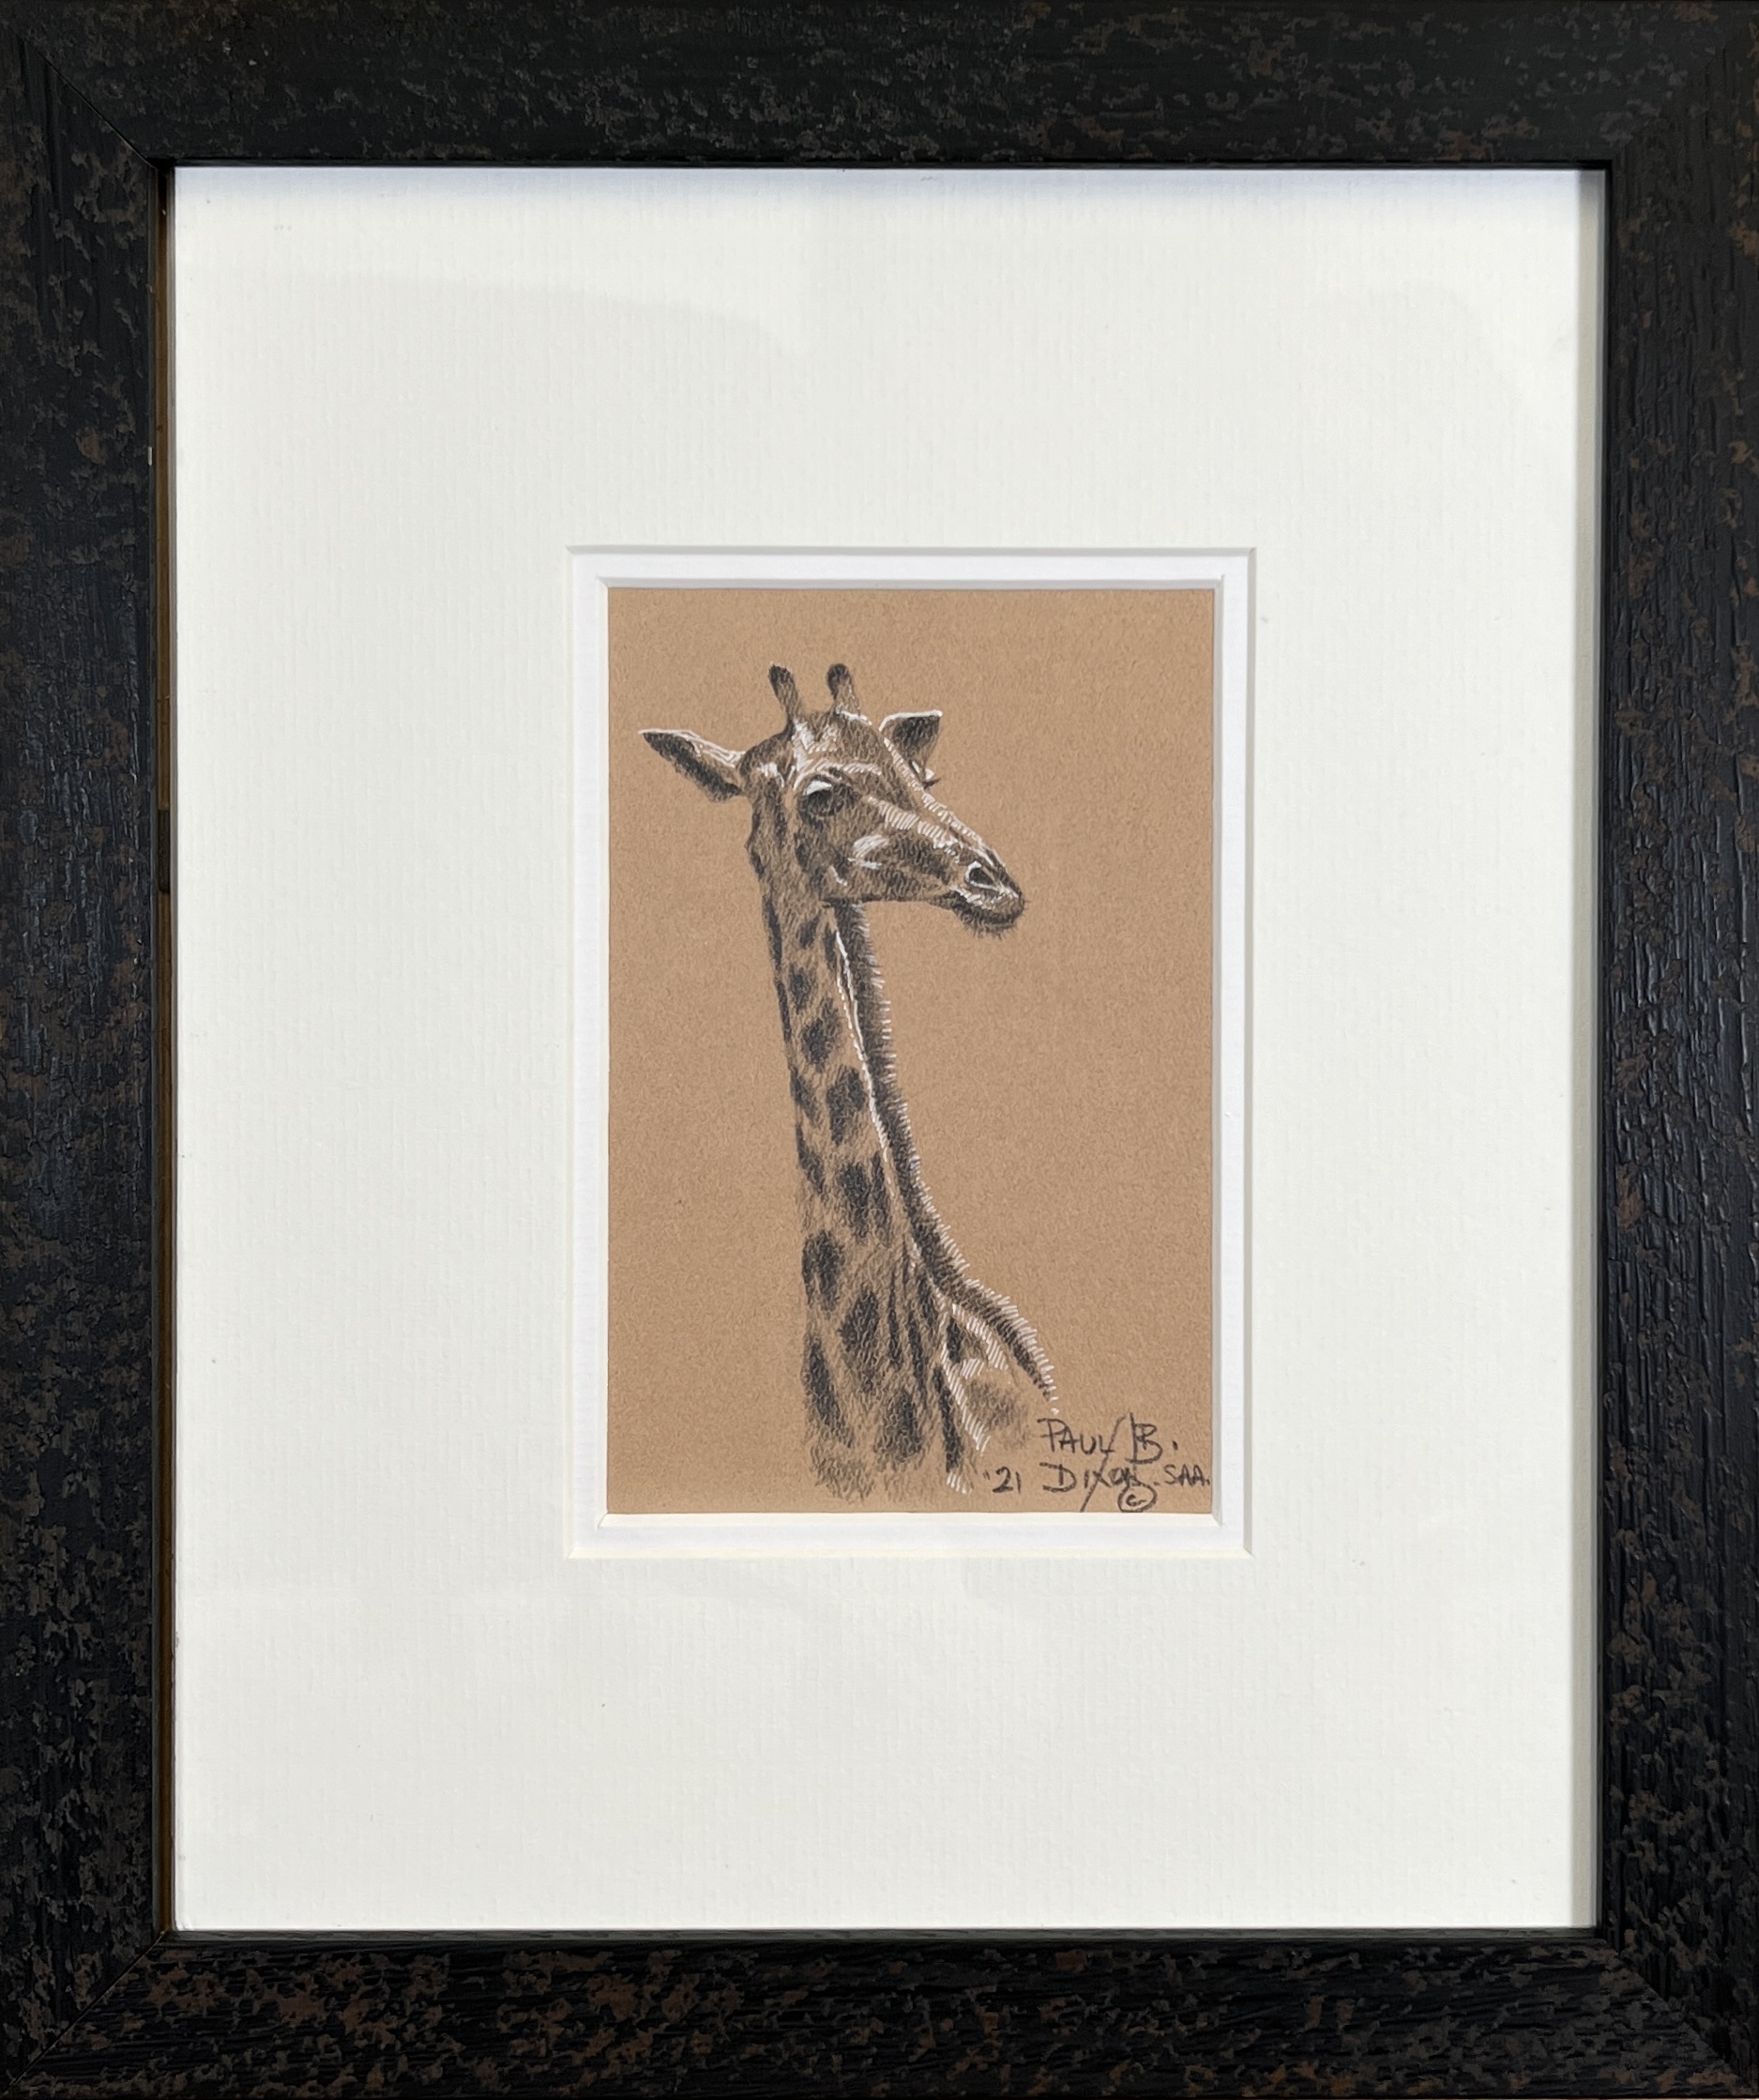 Image of framed Giraffe by Paul Dixon